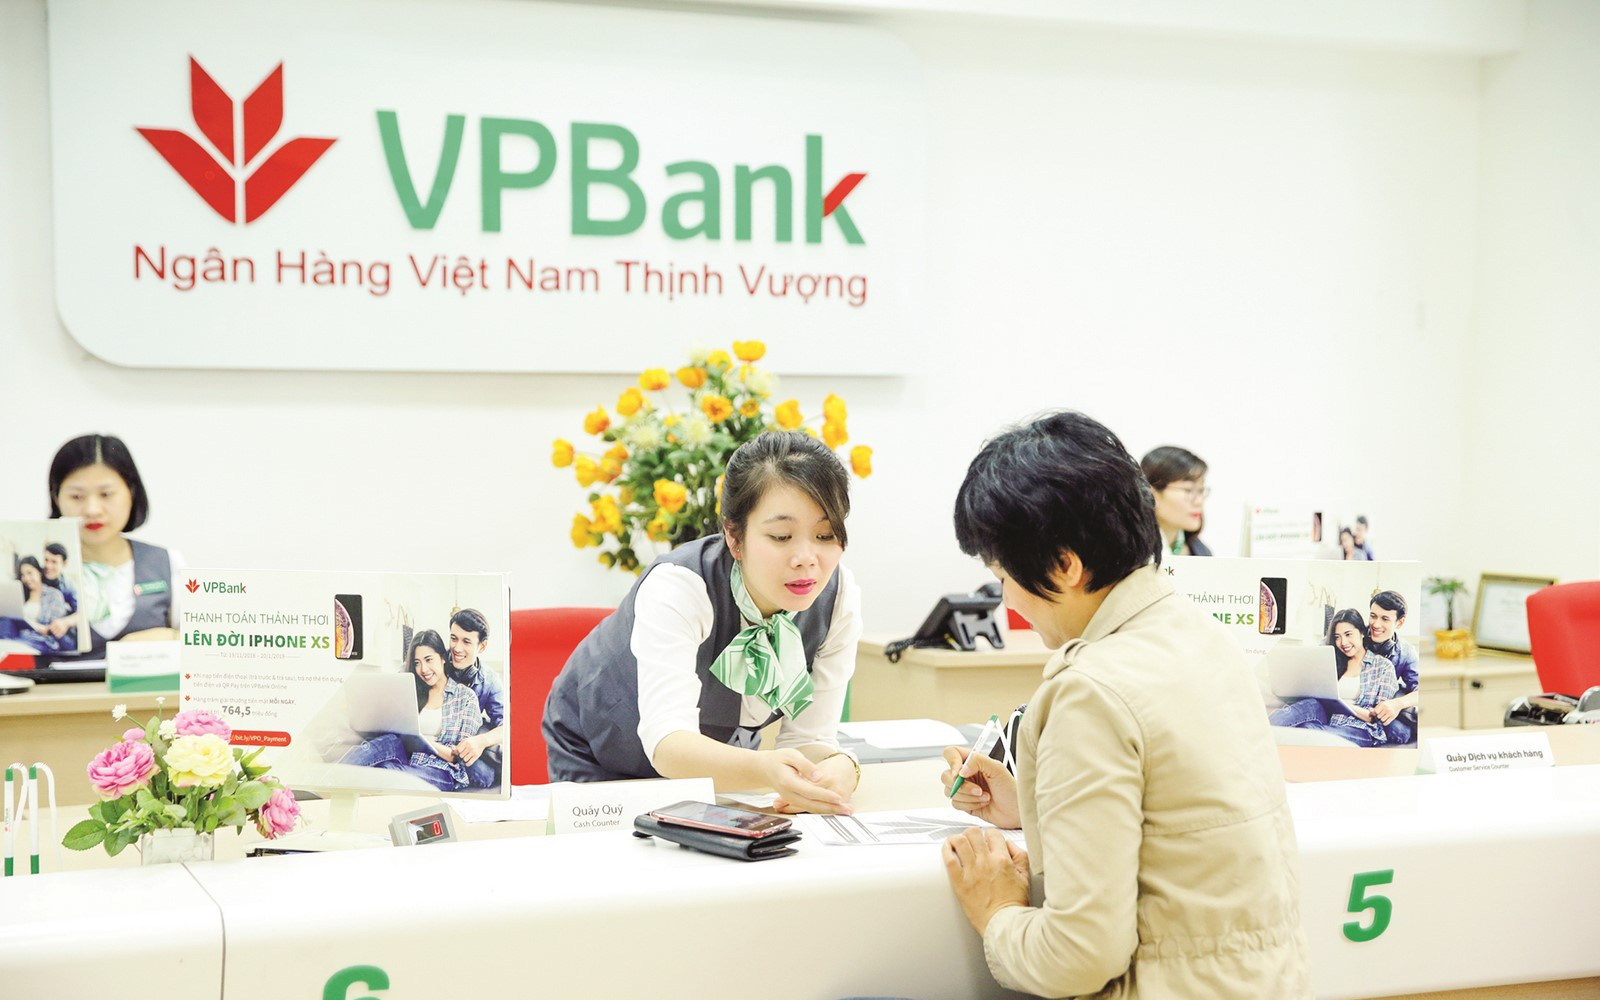 VPBank “dọn đường” đón cổ đông chiến lược, ai là ứng cử viên sáng giá?